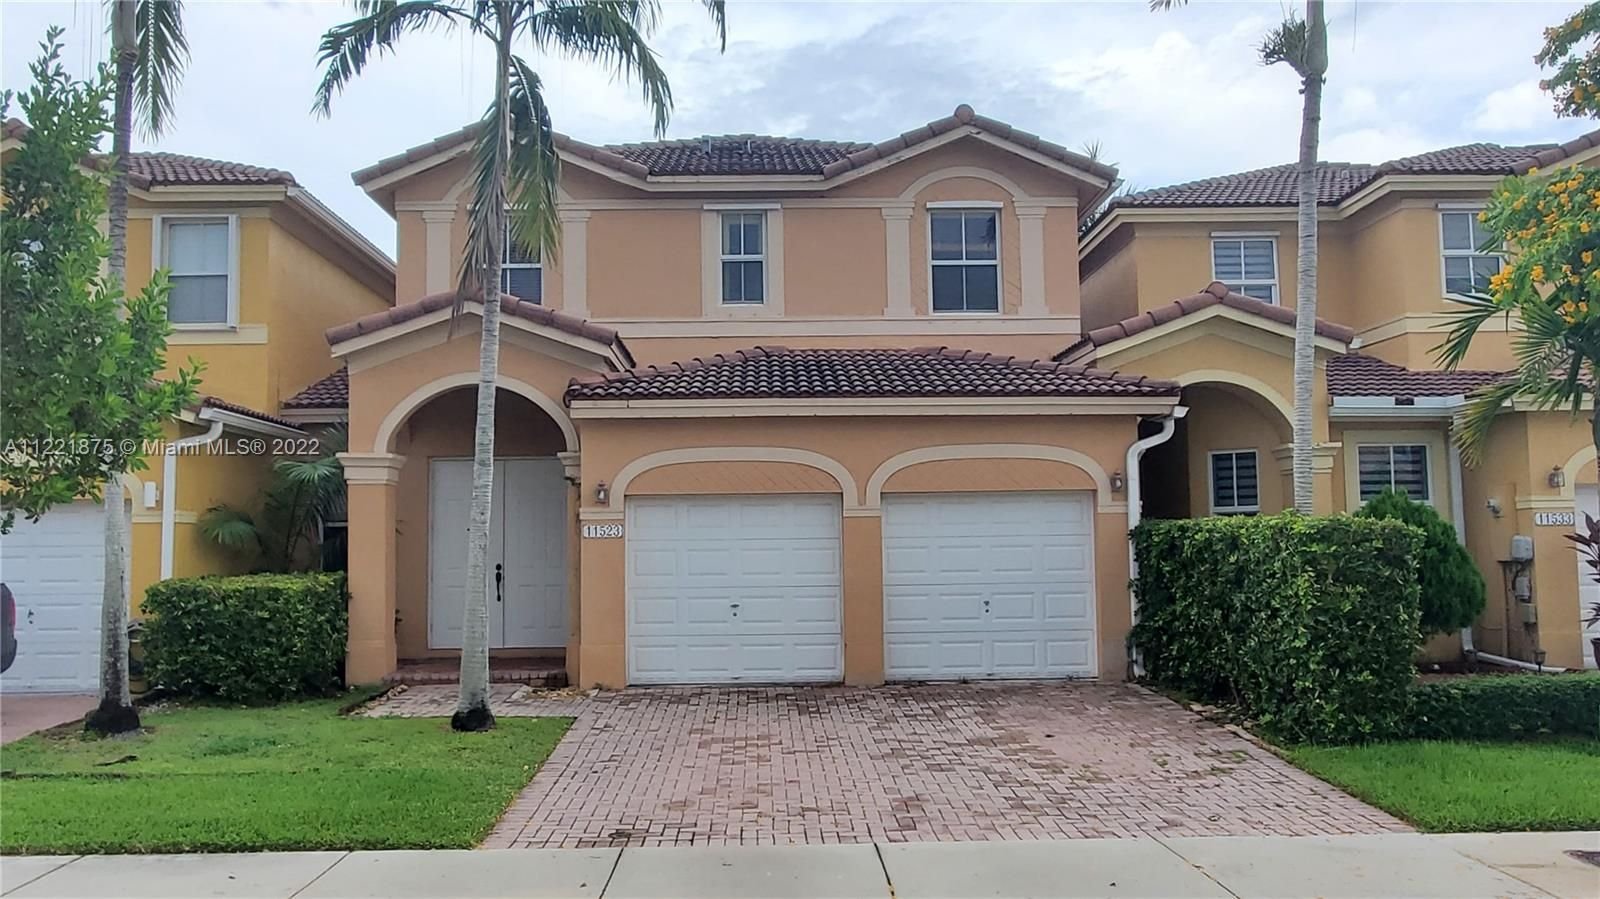 Real estate property located at 11523 137th Psge, Miami-Dade County, Miami, FL